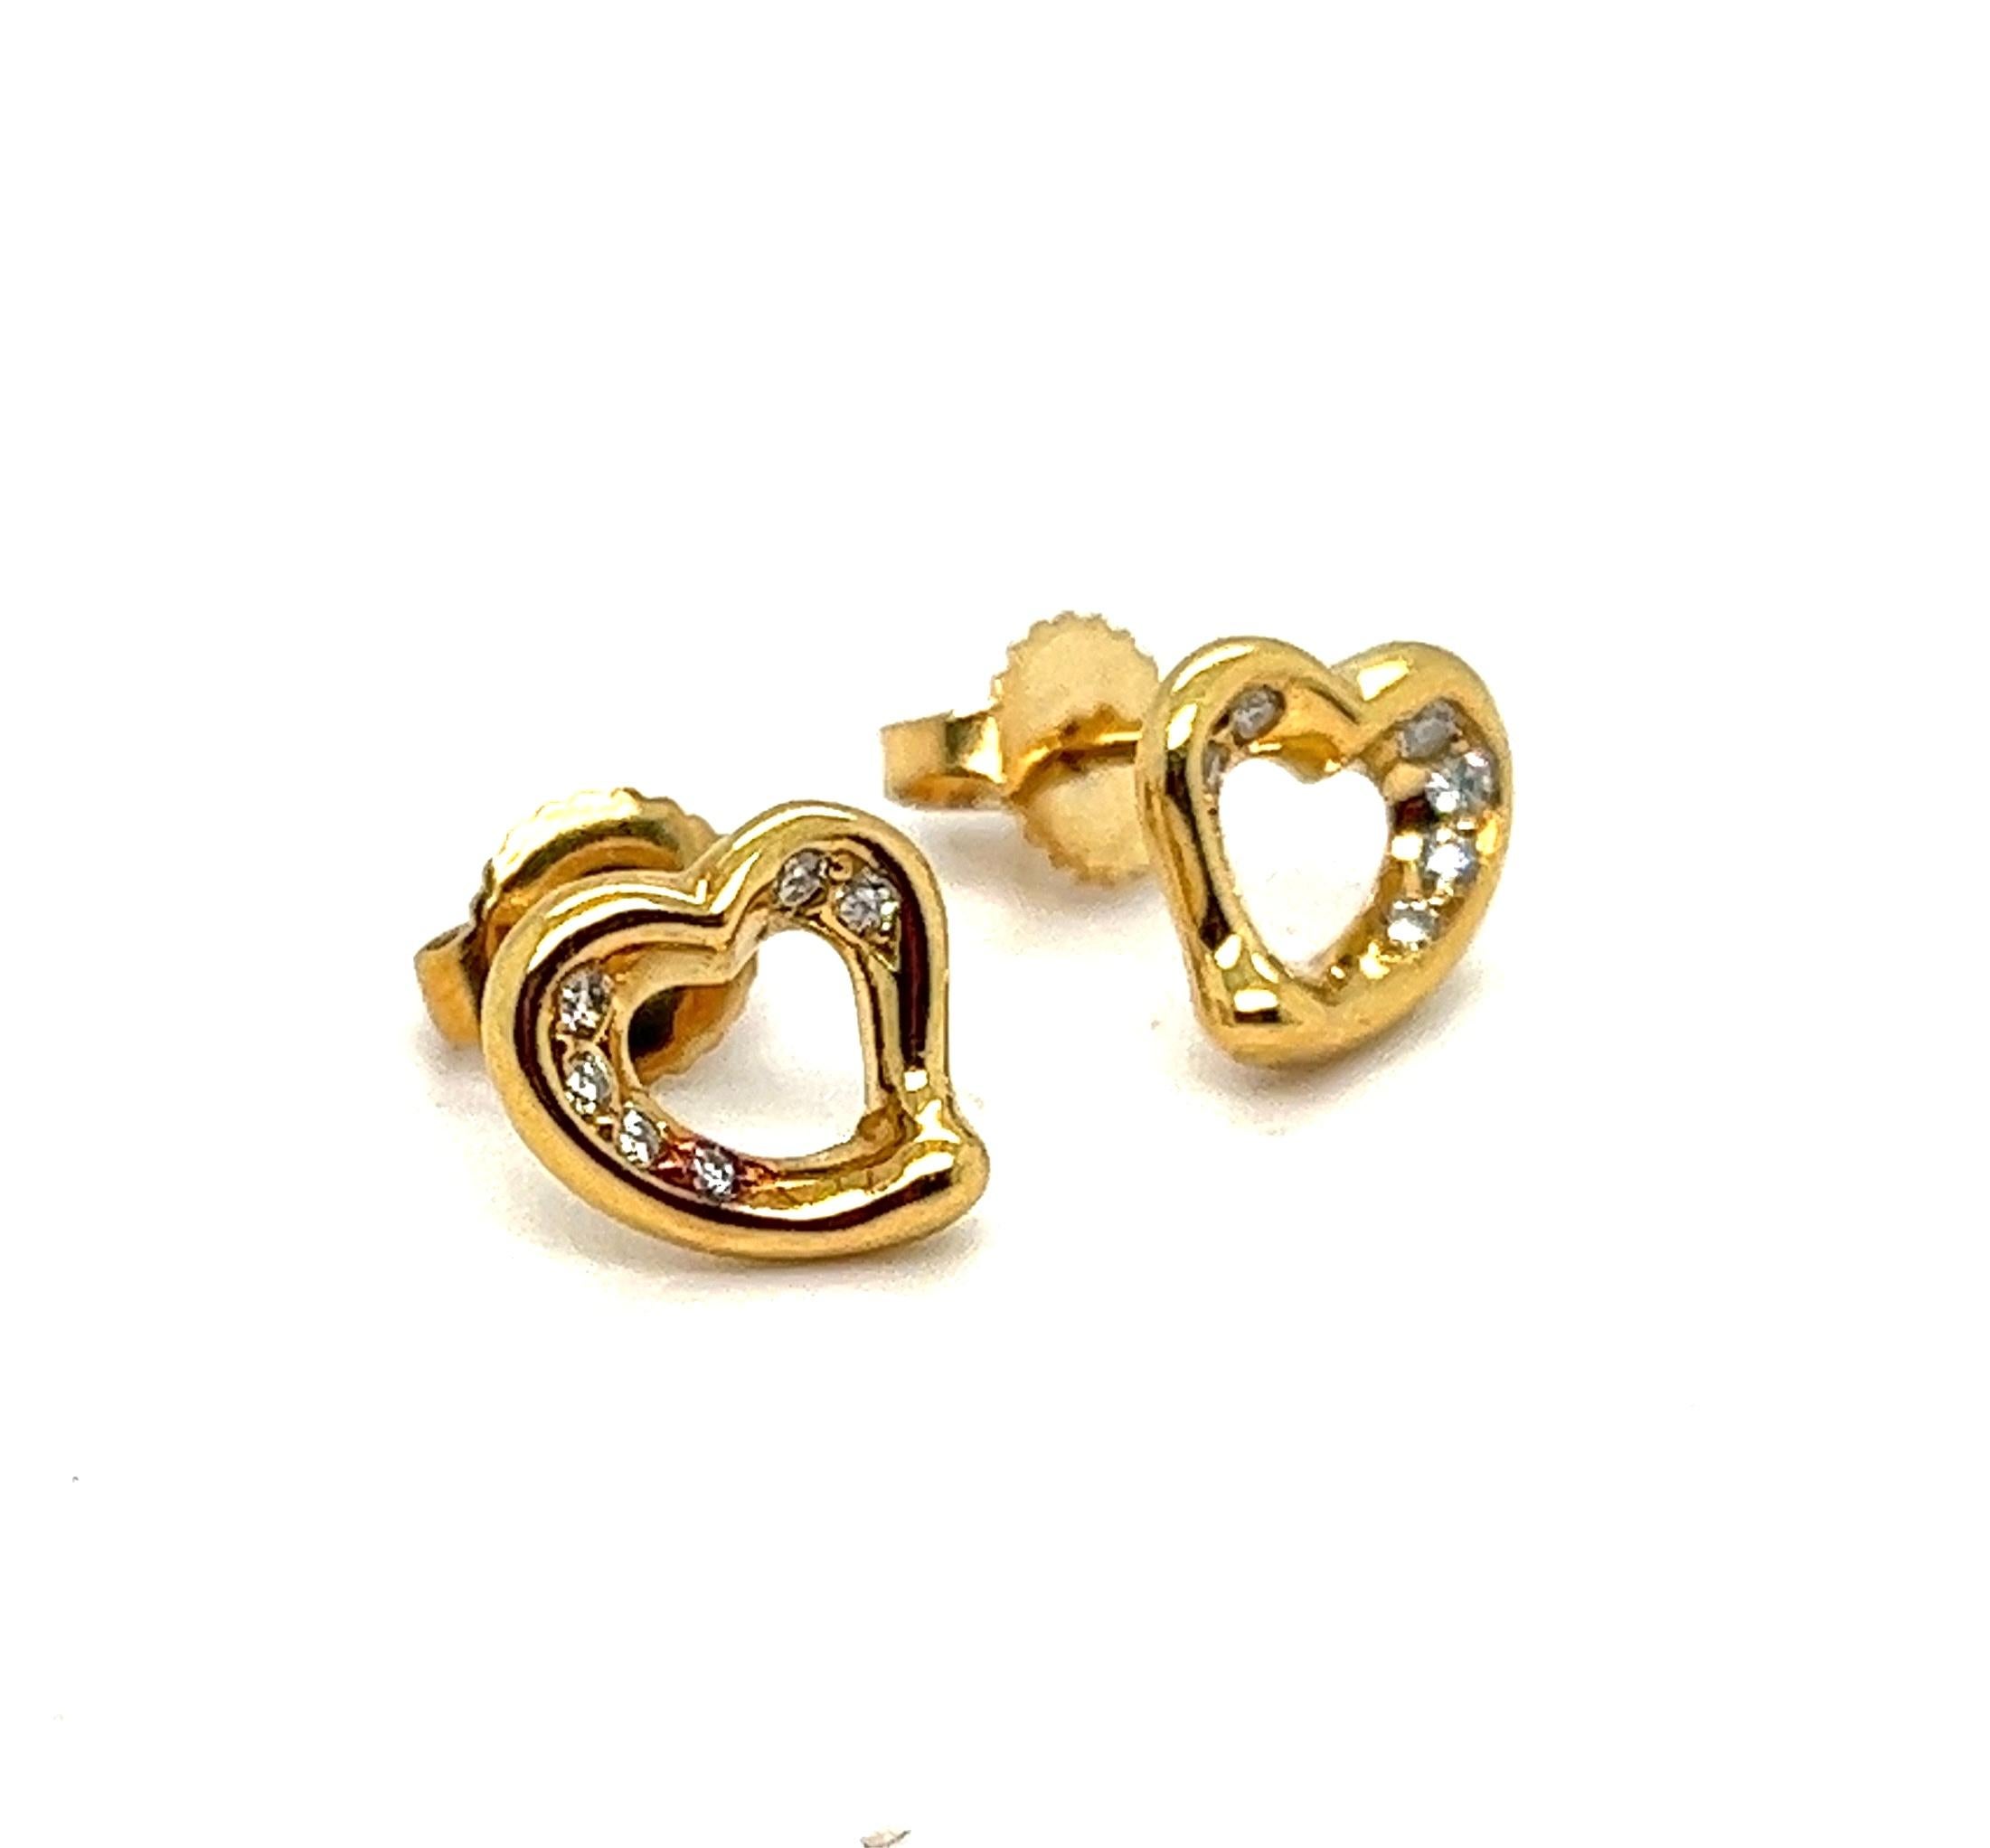 Angeboten wird hier ein authentisches Tiffany & Co. offenes Herz Ohrstecker mit Top-Qualität Diamanten geschmückt.
Hergestellt aus massivem 18-karätigem Gelbgold, mit Druckknöpfen für Ohrlöcher.
Die schlichte, suggestive Form der offenen Herzen von